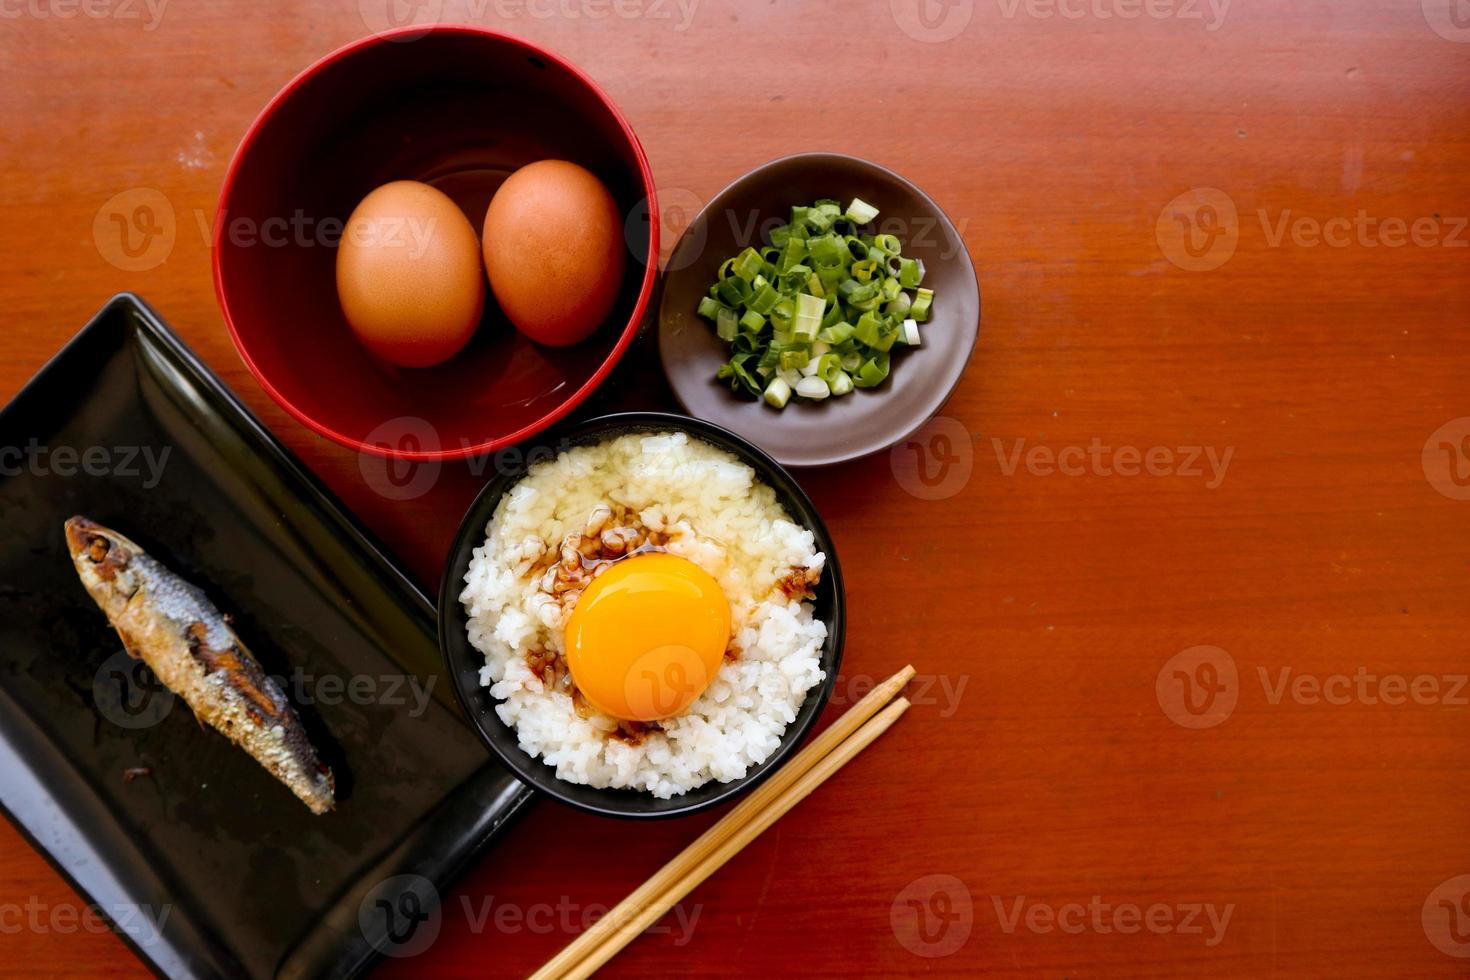 tamago kake gohan ou ovo cru no arroz. comida tradicional do japão, comer no café da manhã foto